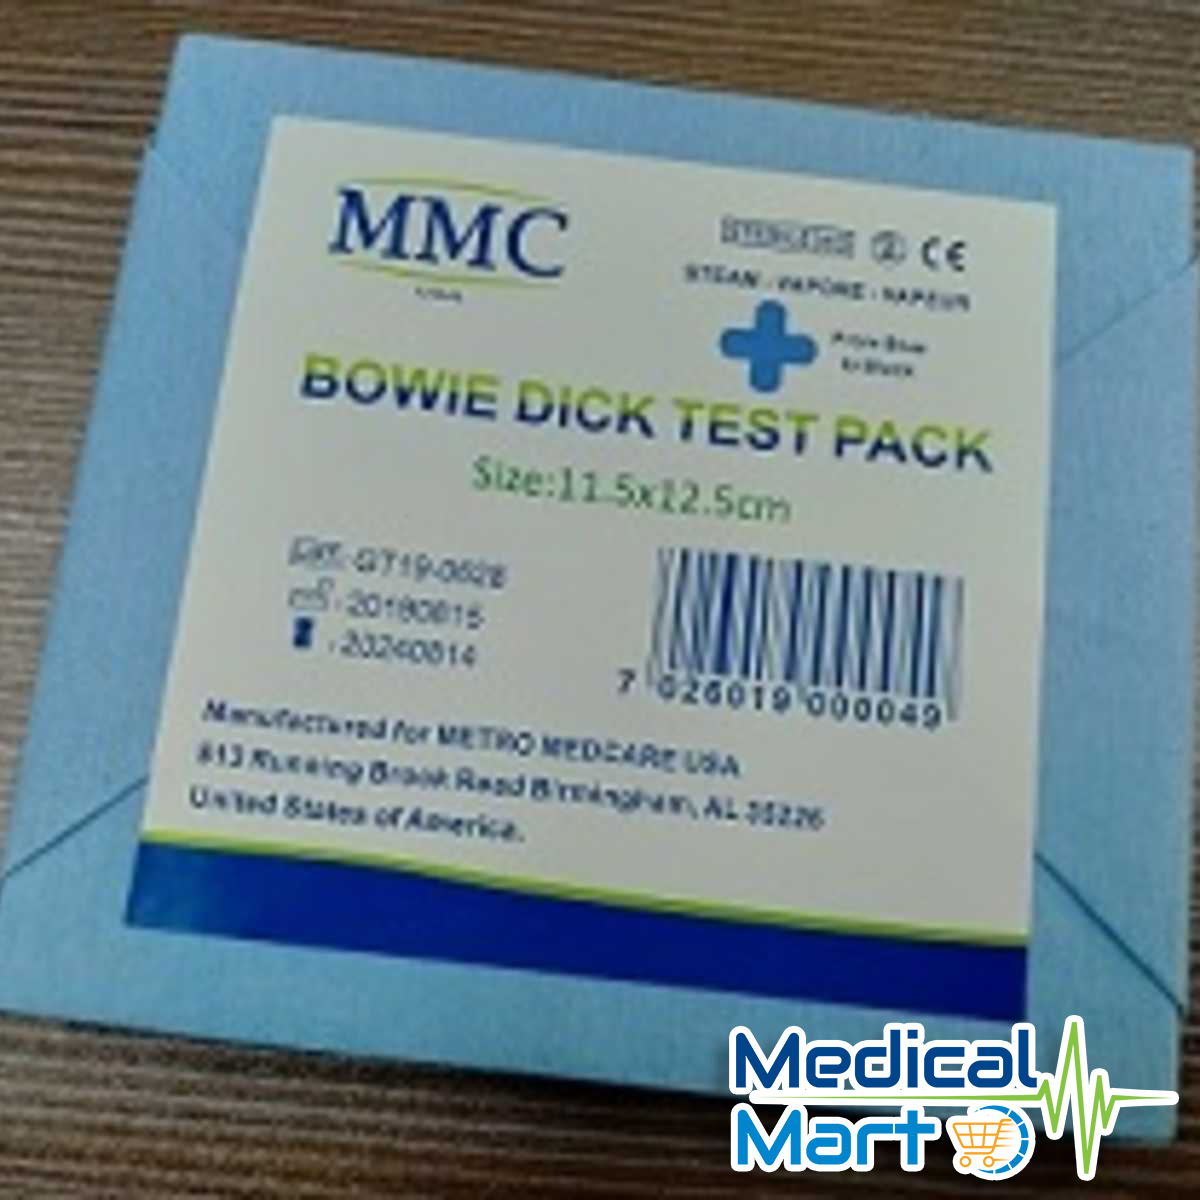 Bowie Dick Test Pack, 11.5cm x 12.5cm